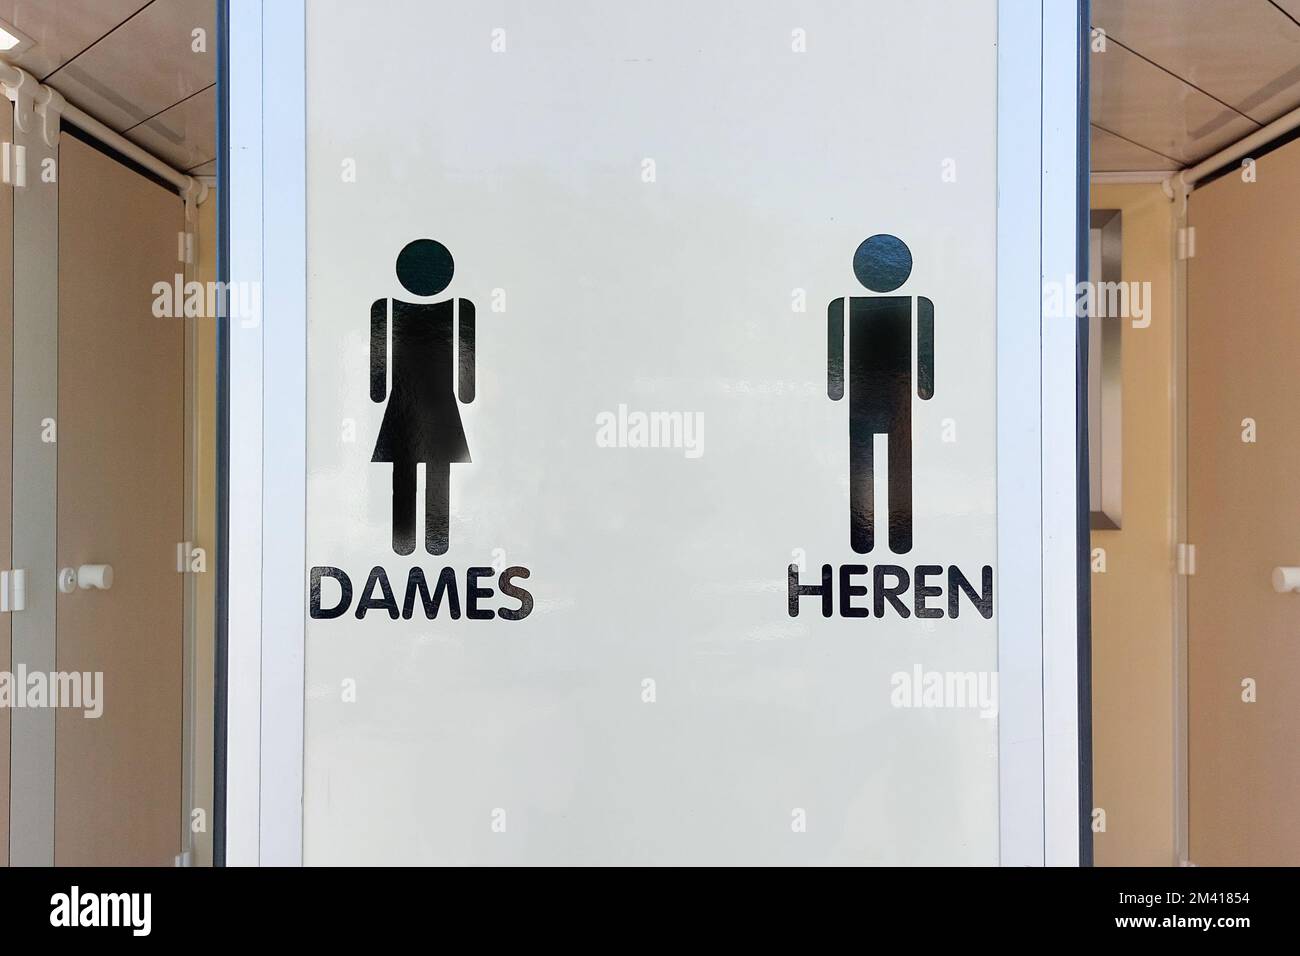 Toilettes extérieures mobiles pour les événements sociaux. Inscription en néerlandais - femmes et hommes Banque D'Images